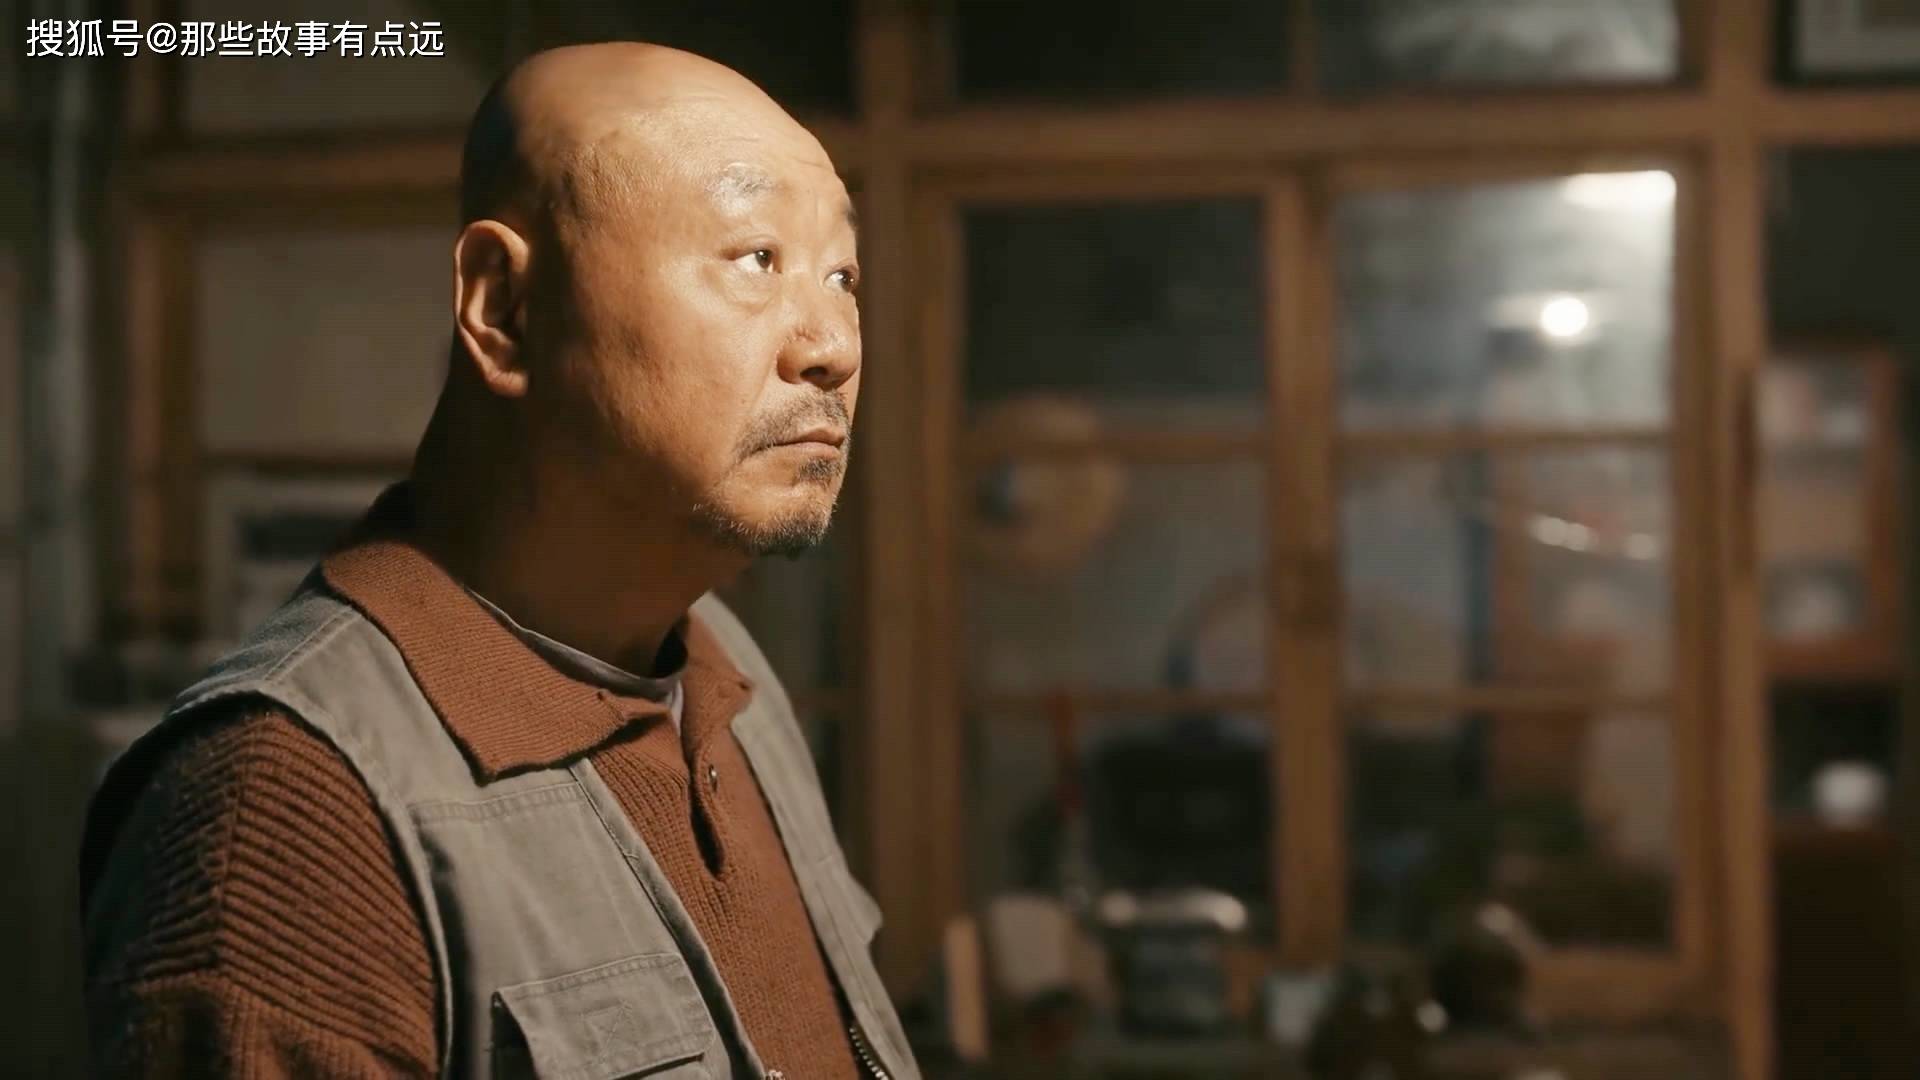 《立功》:范伟剧中角色看着挺眼熟,好像是范德彪变老了